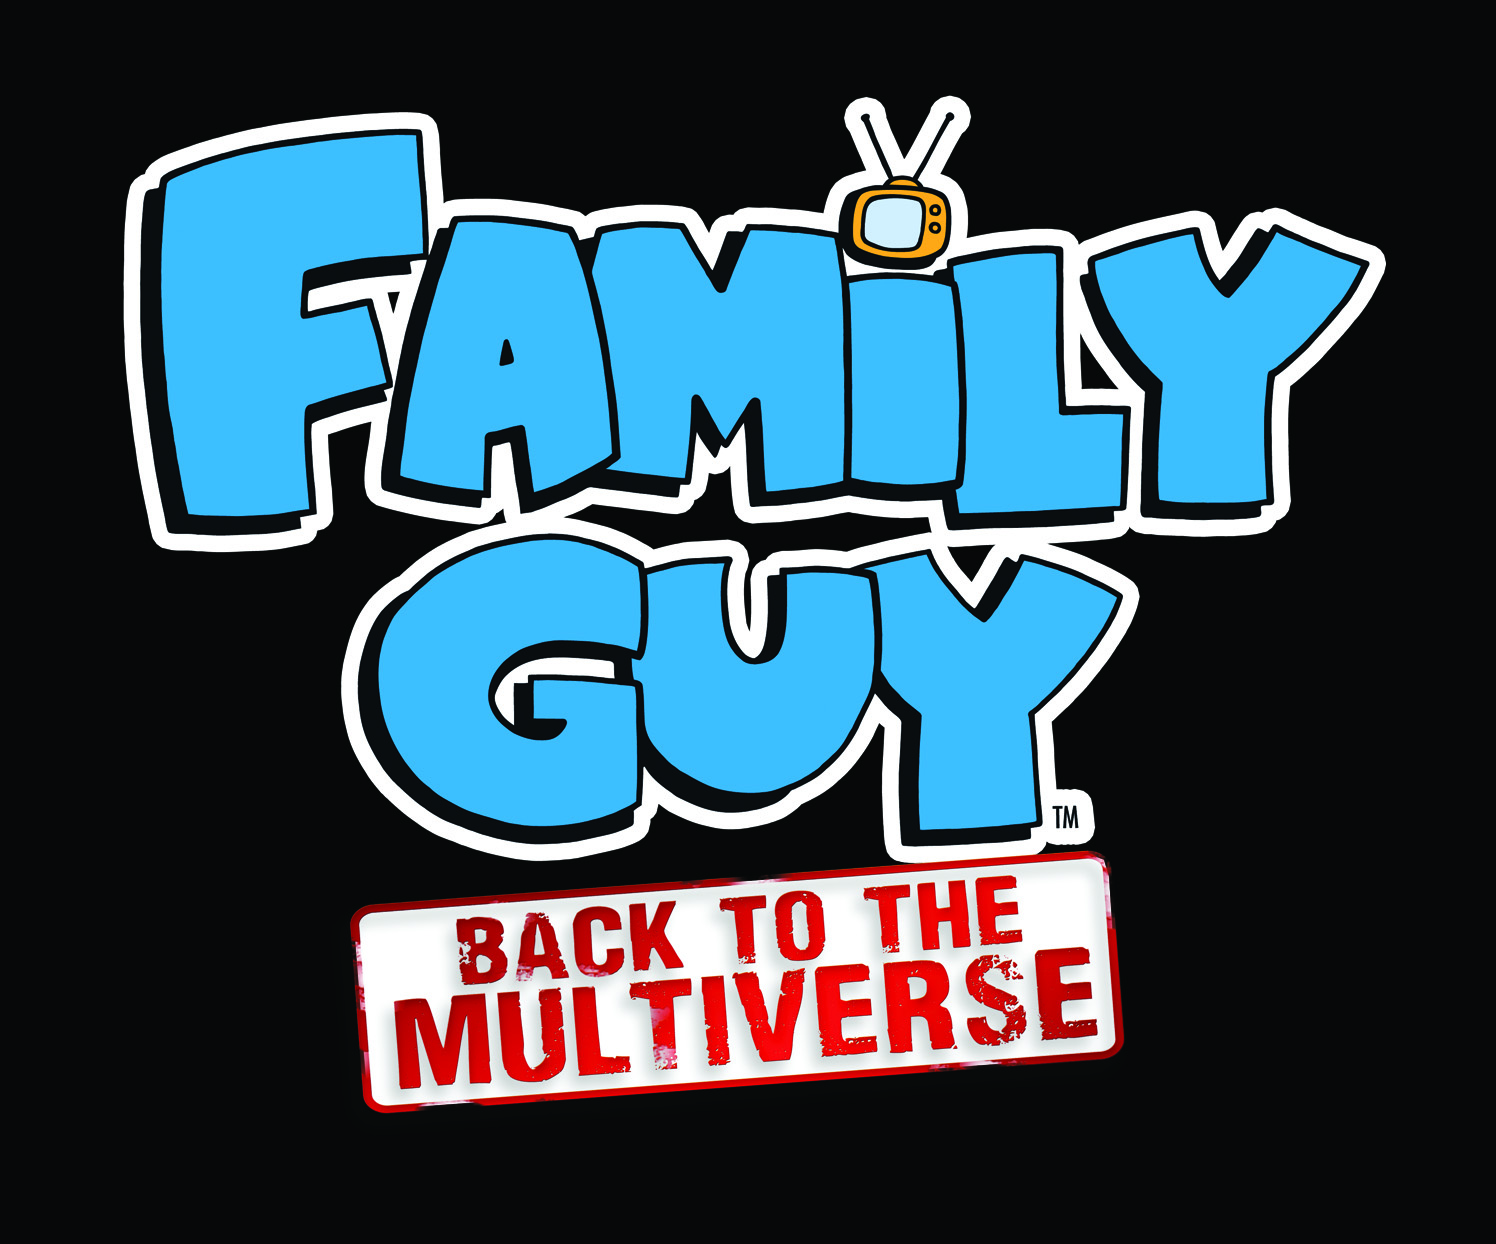 Family guy back. Family guy: back to the Multiverse. Family guy надпись. Гриффины логотип. Гриффины надпись.